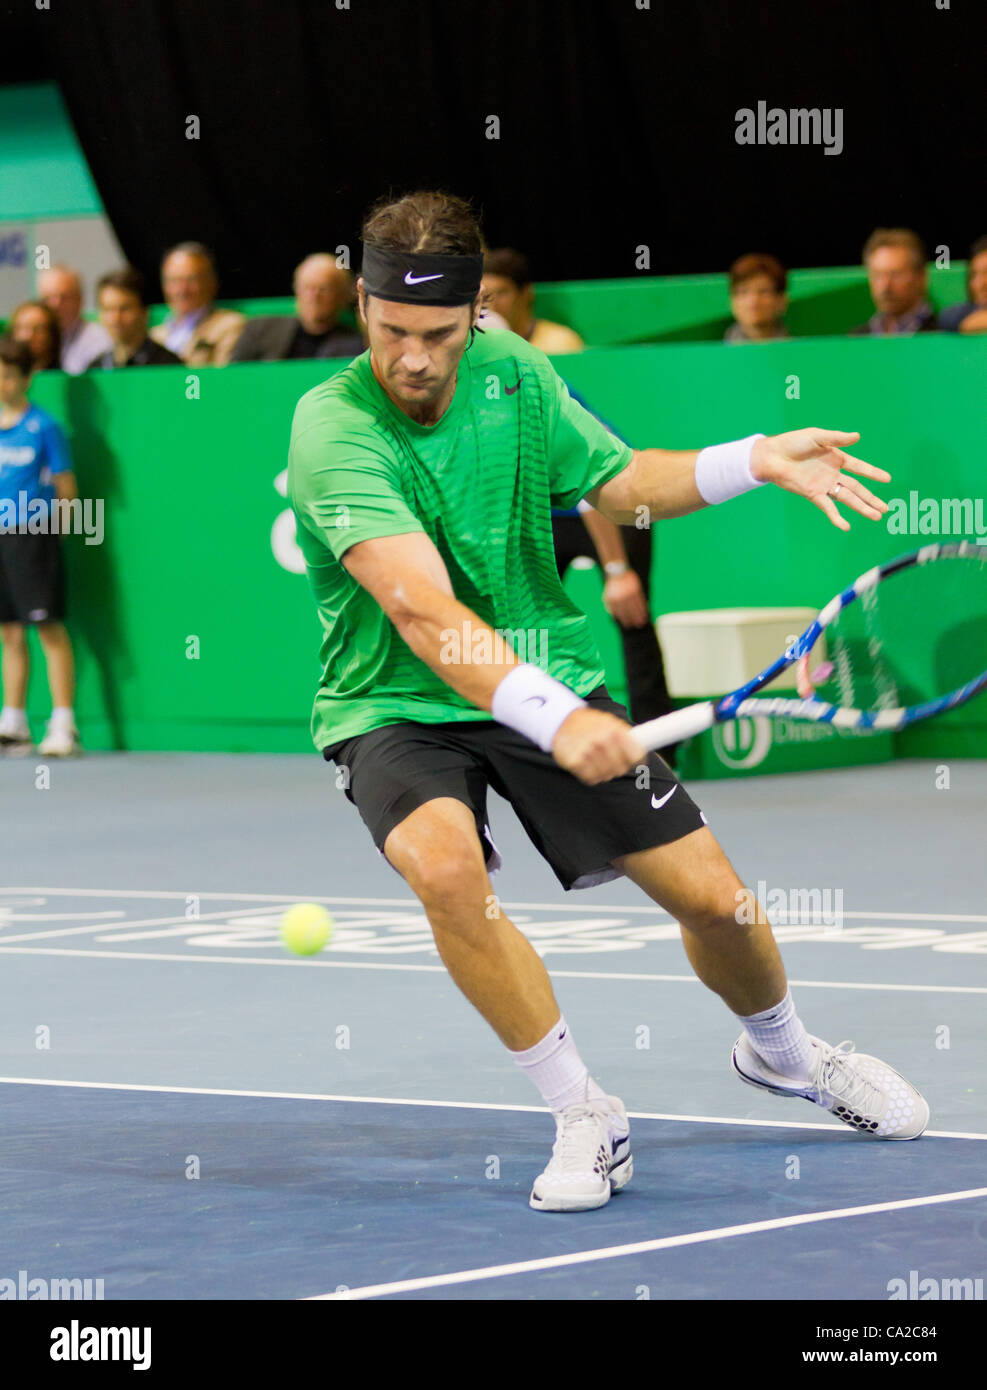 ZURICH, SWITZERLAND-MARCH 24: Carlos Moya plays tennis in final of BNP ...